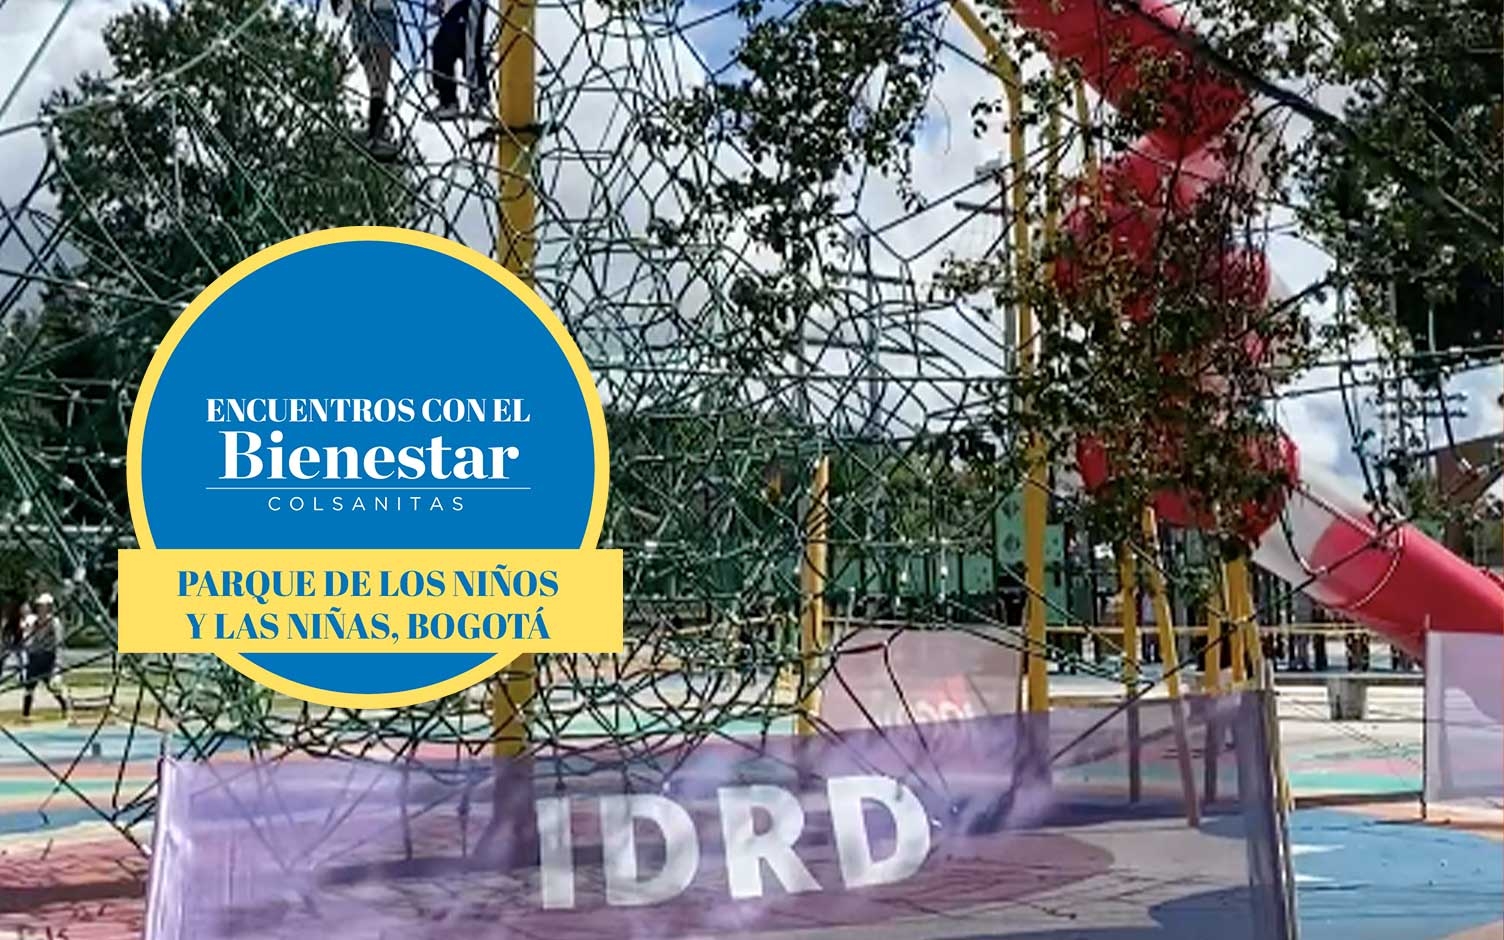 Visite el Parque de los niños y las niñas en Bogotá